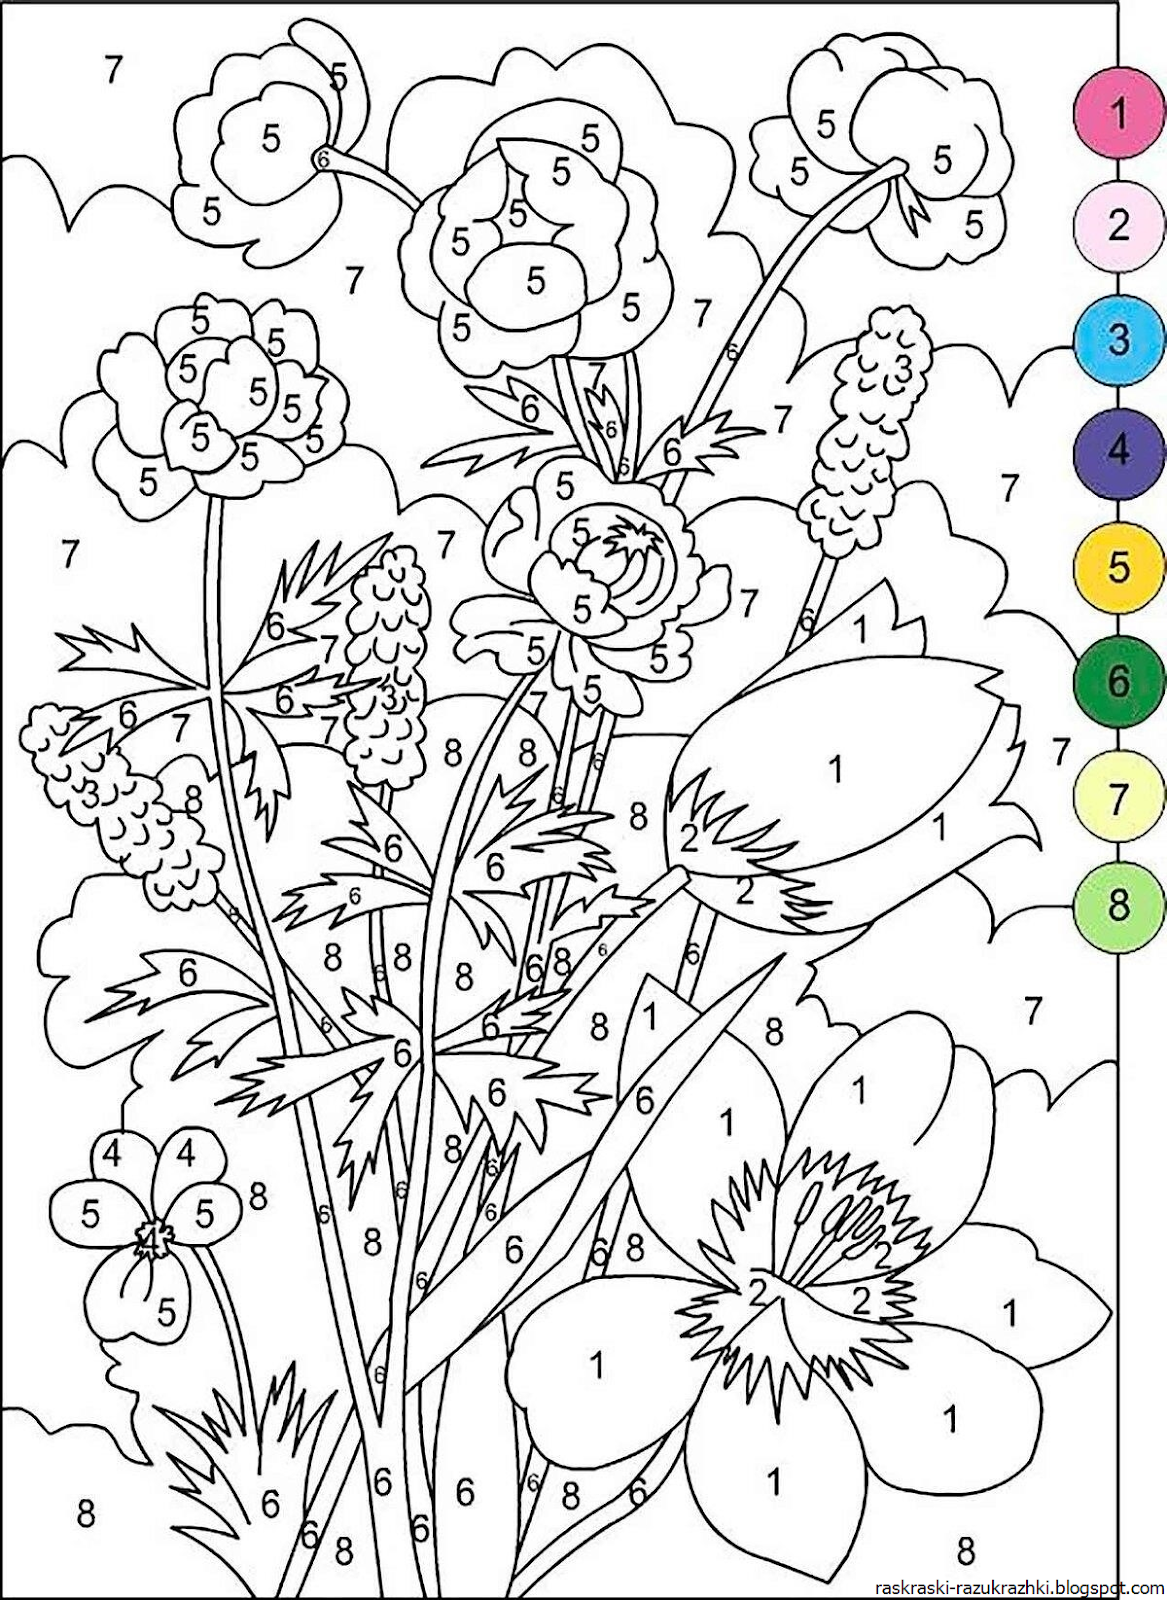 Раскраска по номерам 3. Цветы. Раскраска. Раскраска по номерам. Картинки для раскрашивания цветы. Цветы раскраска для детей.